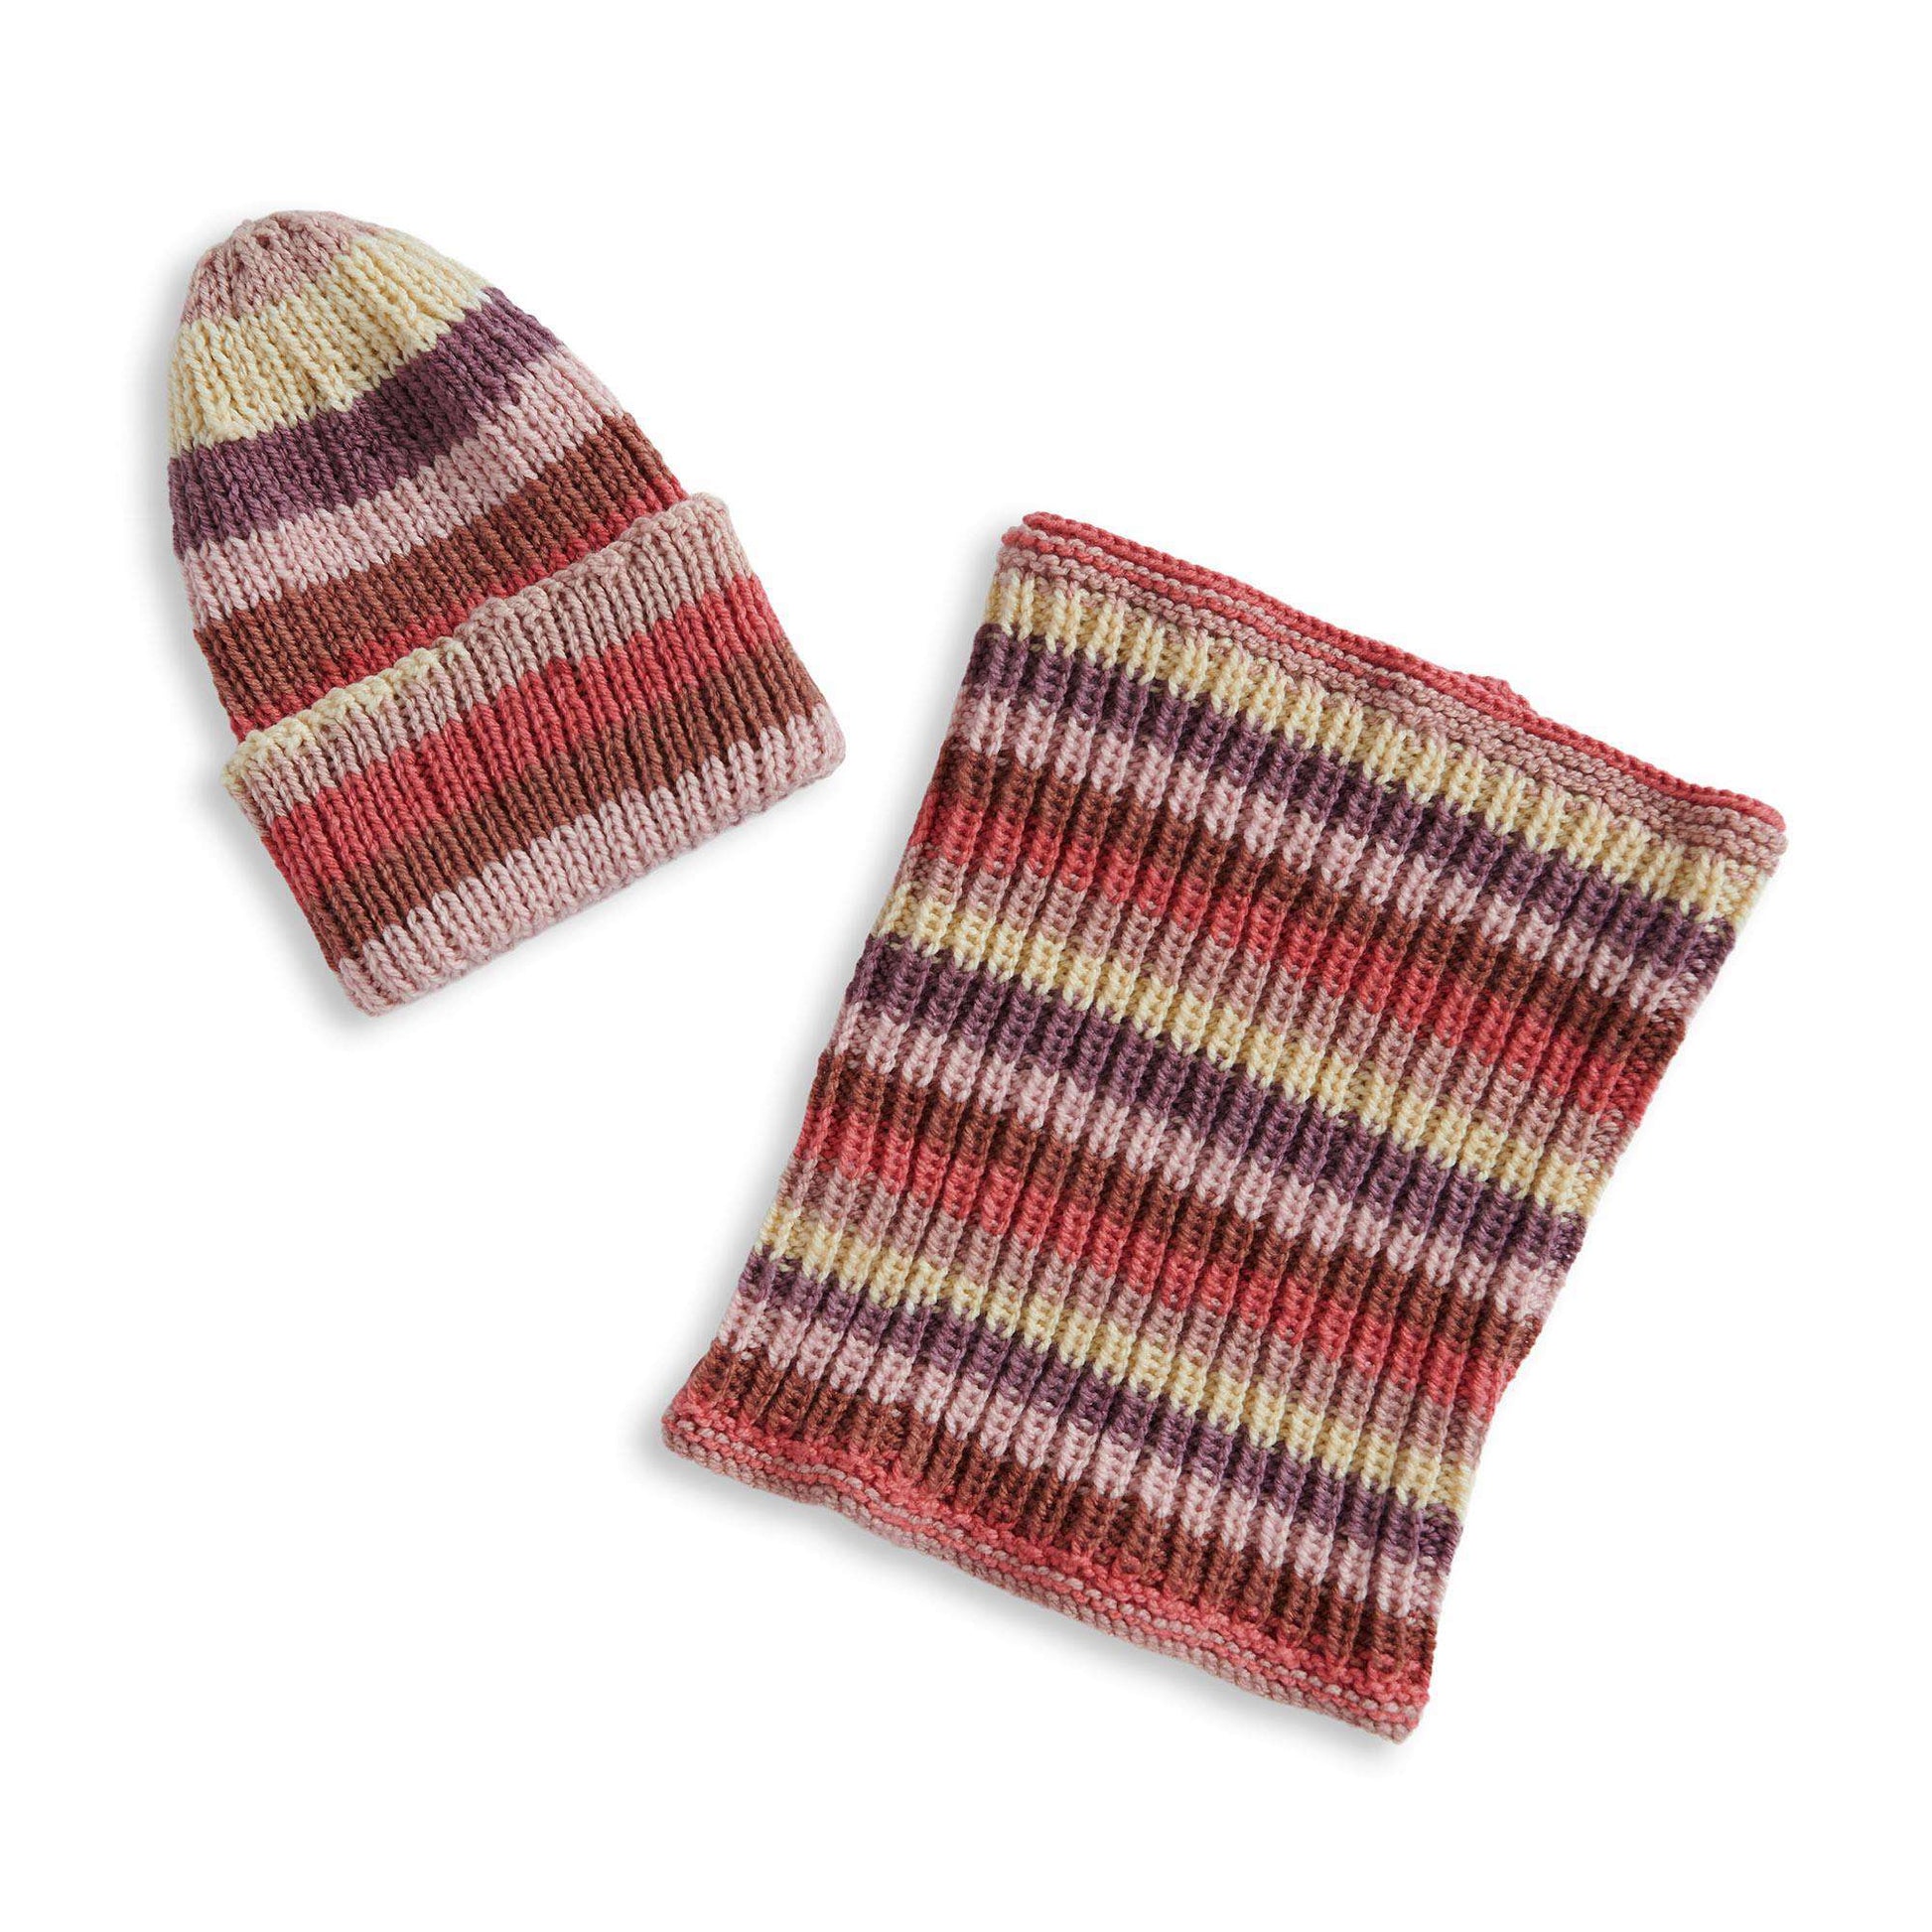 Free Caron Knit Hat & Cowl Knit Set Pattern